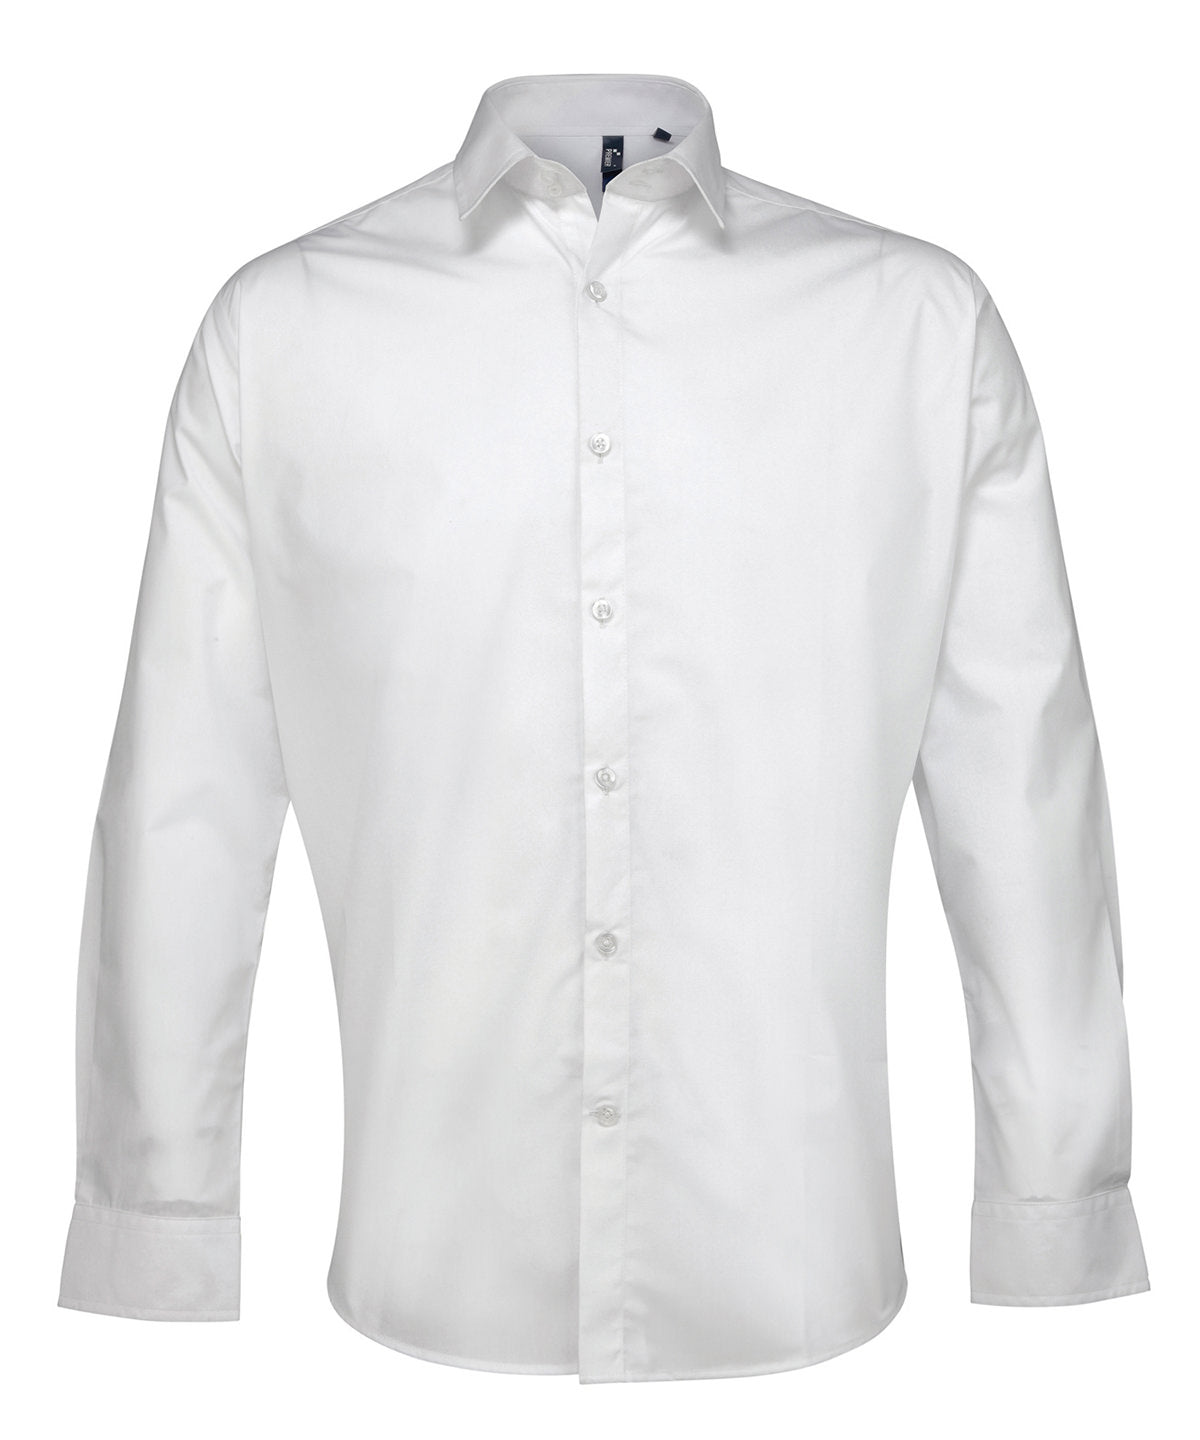 Bolir - Supreme Poplin Long Sleeve Shirt